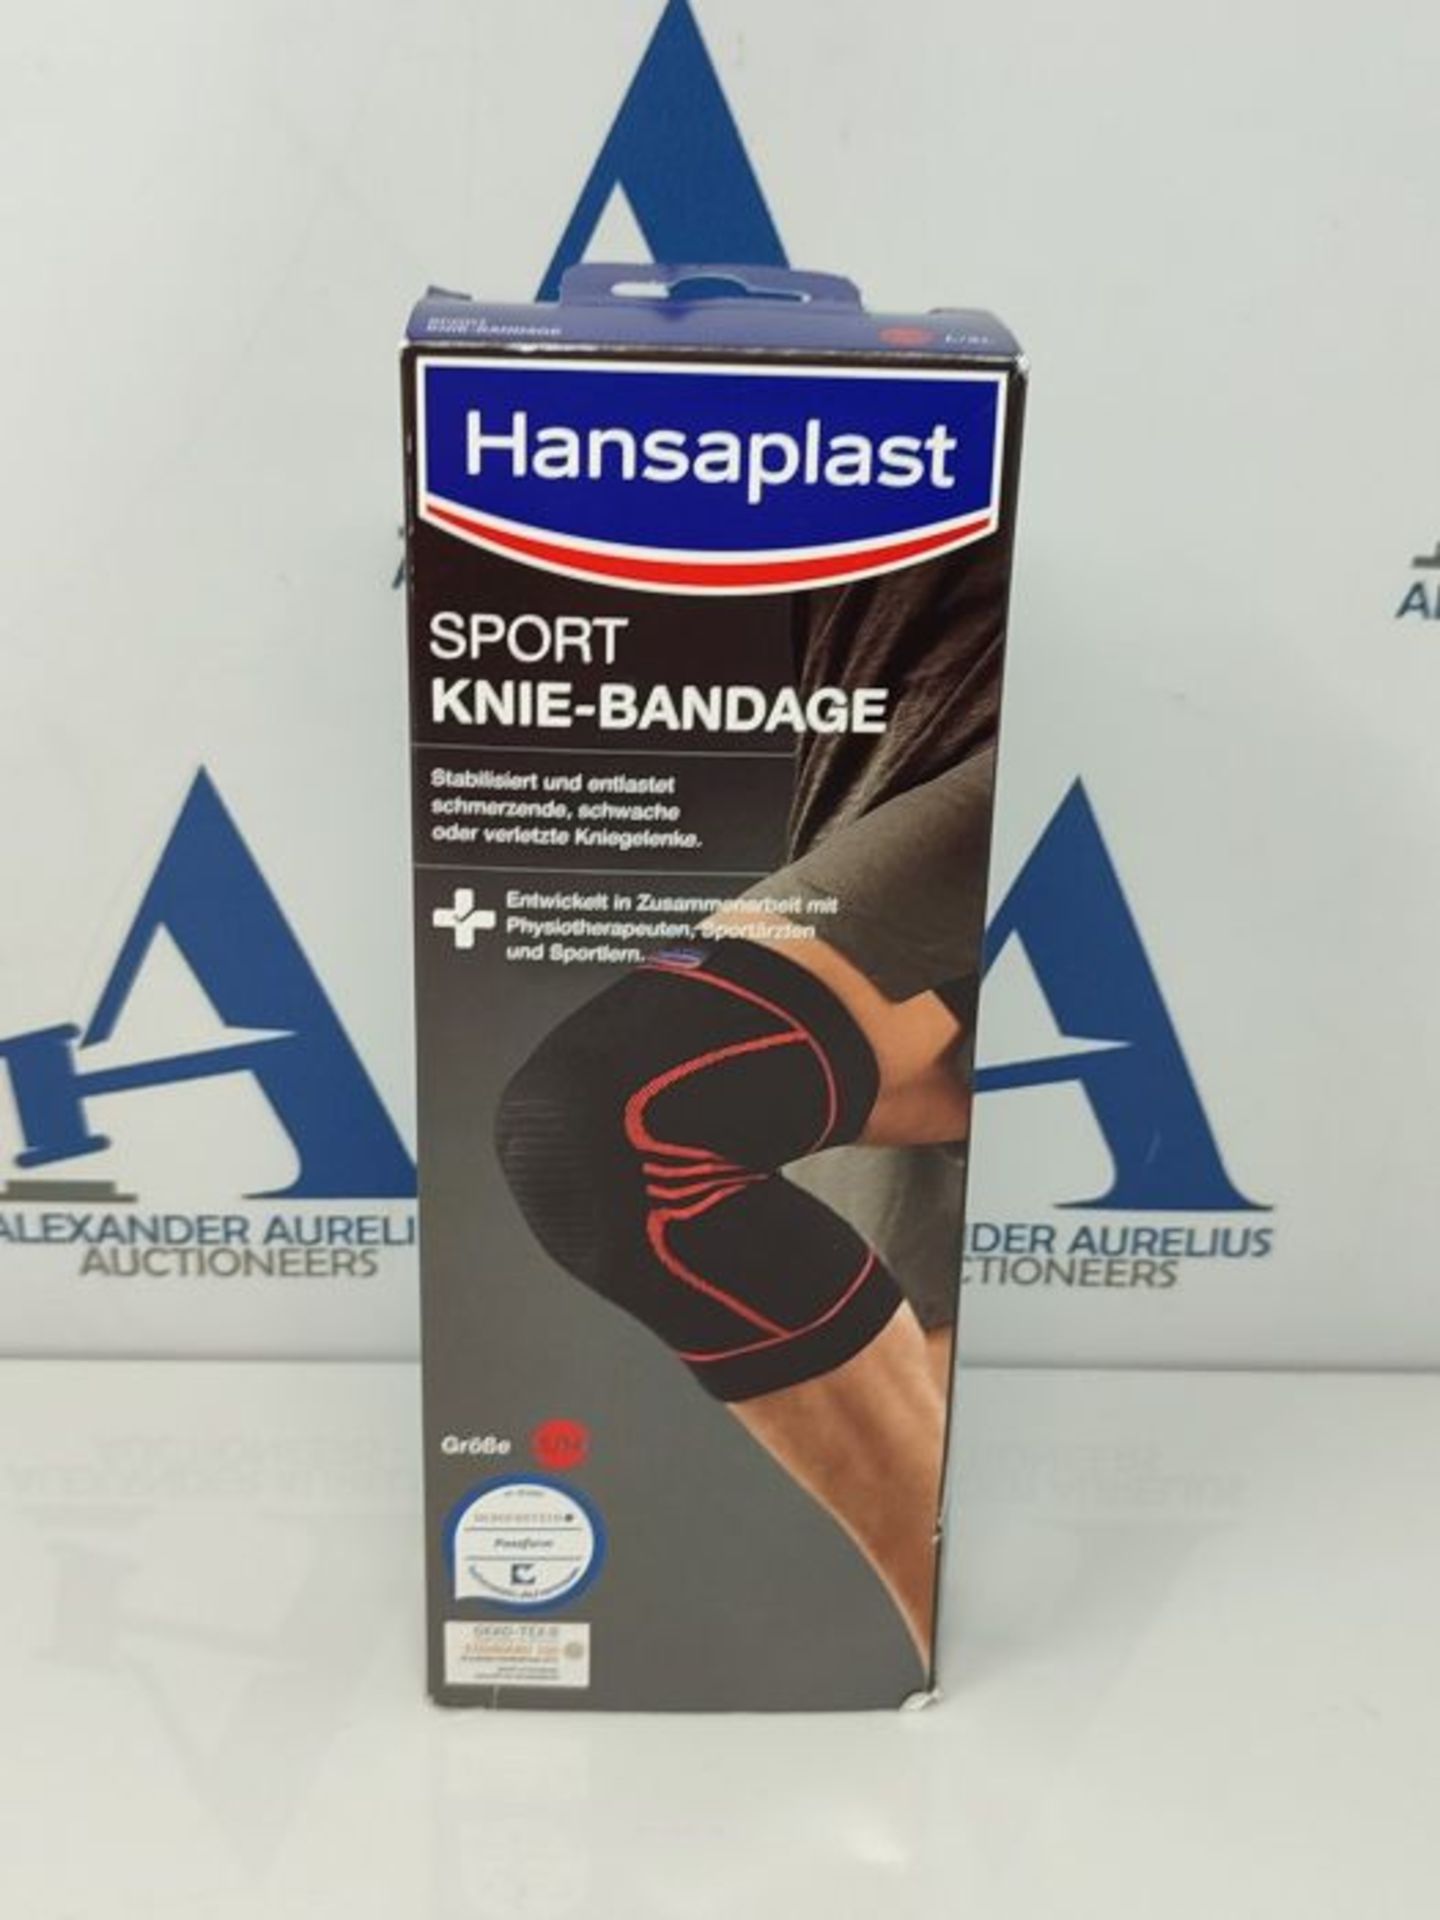 Hansaplast Sport Knie-Bandage, Kniebandage stabilisiert und unterst?tzt das Gelenk, Ba - Image 2 of 3